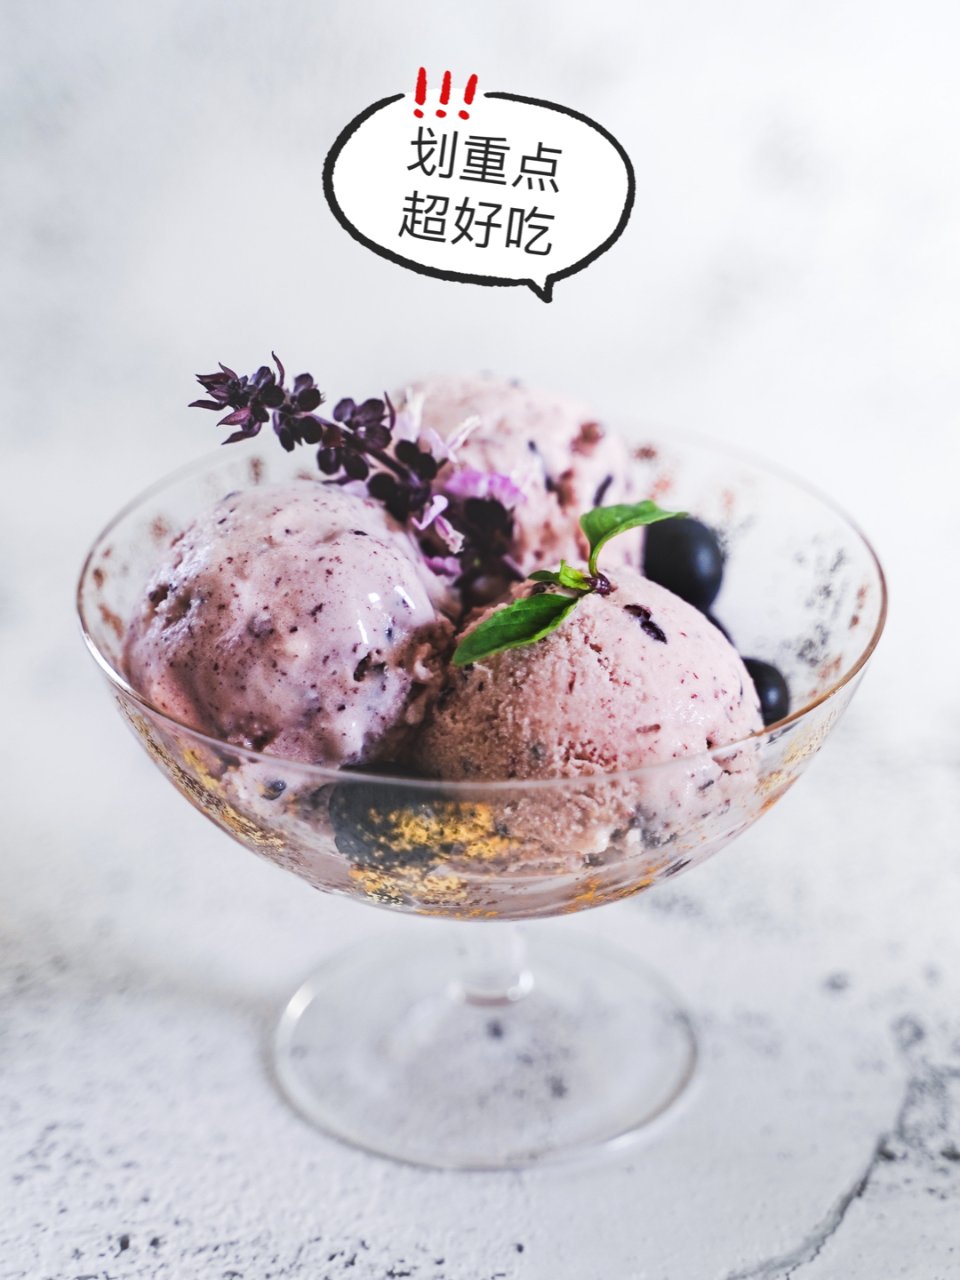 太好吃了‼️简单DIY紫米冰淇淋🍦